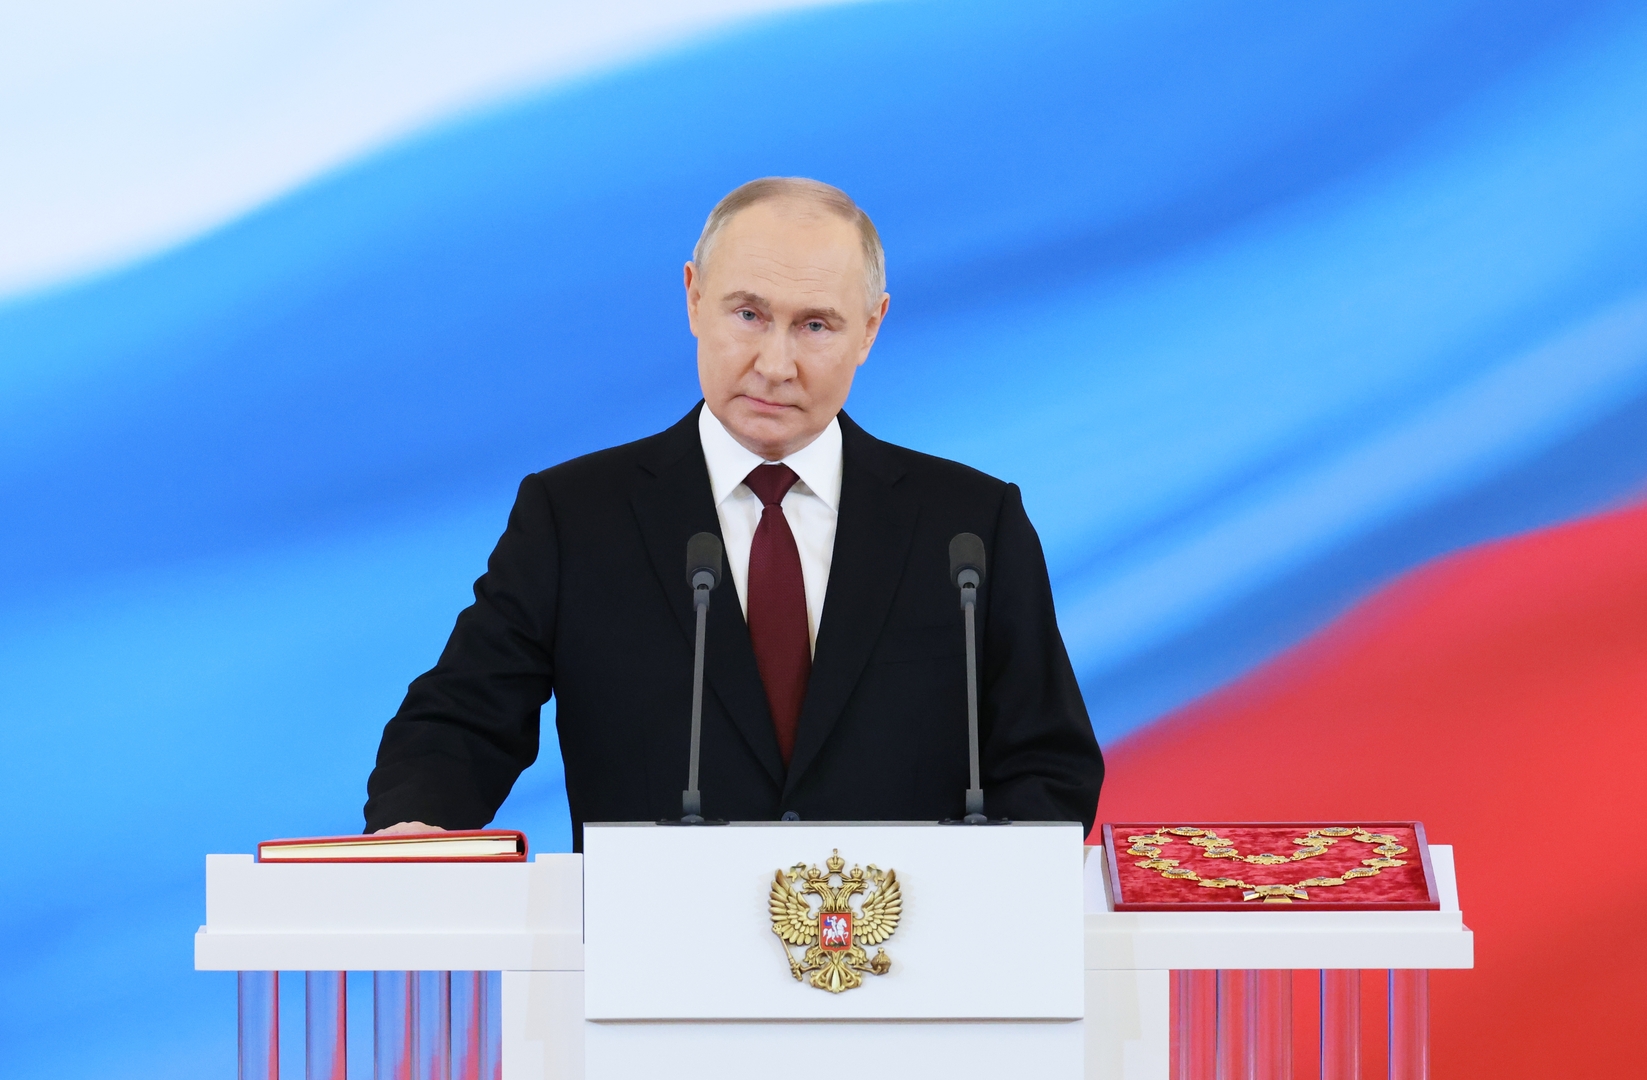 بعد توليه ولاية رئاسية جديدة.. بوتين يصدر مرسوما حول تنمية روسيا حتى 2030